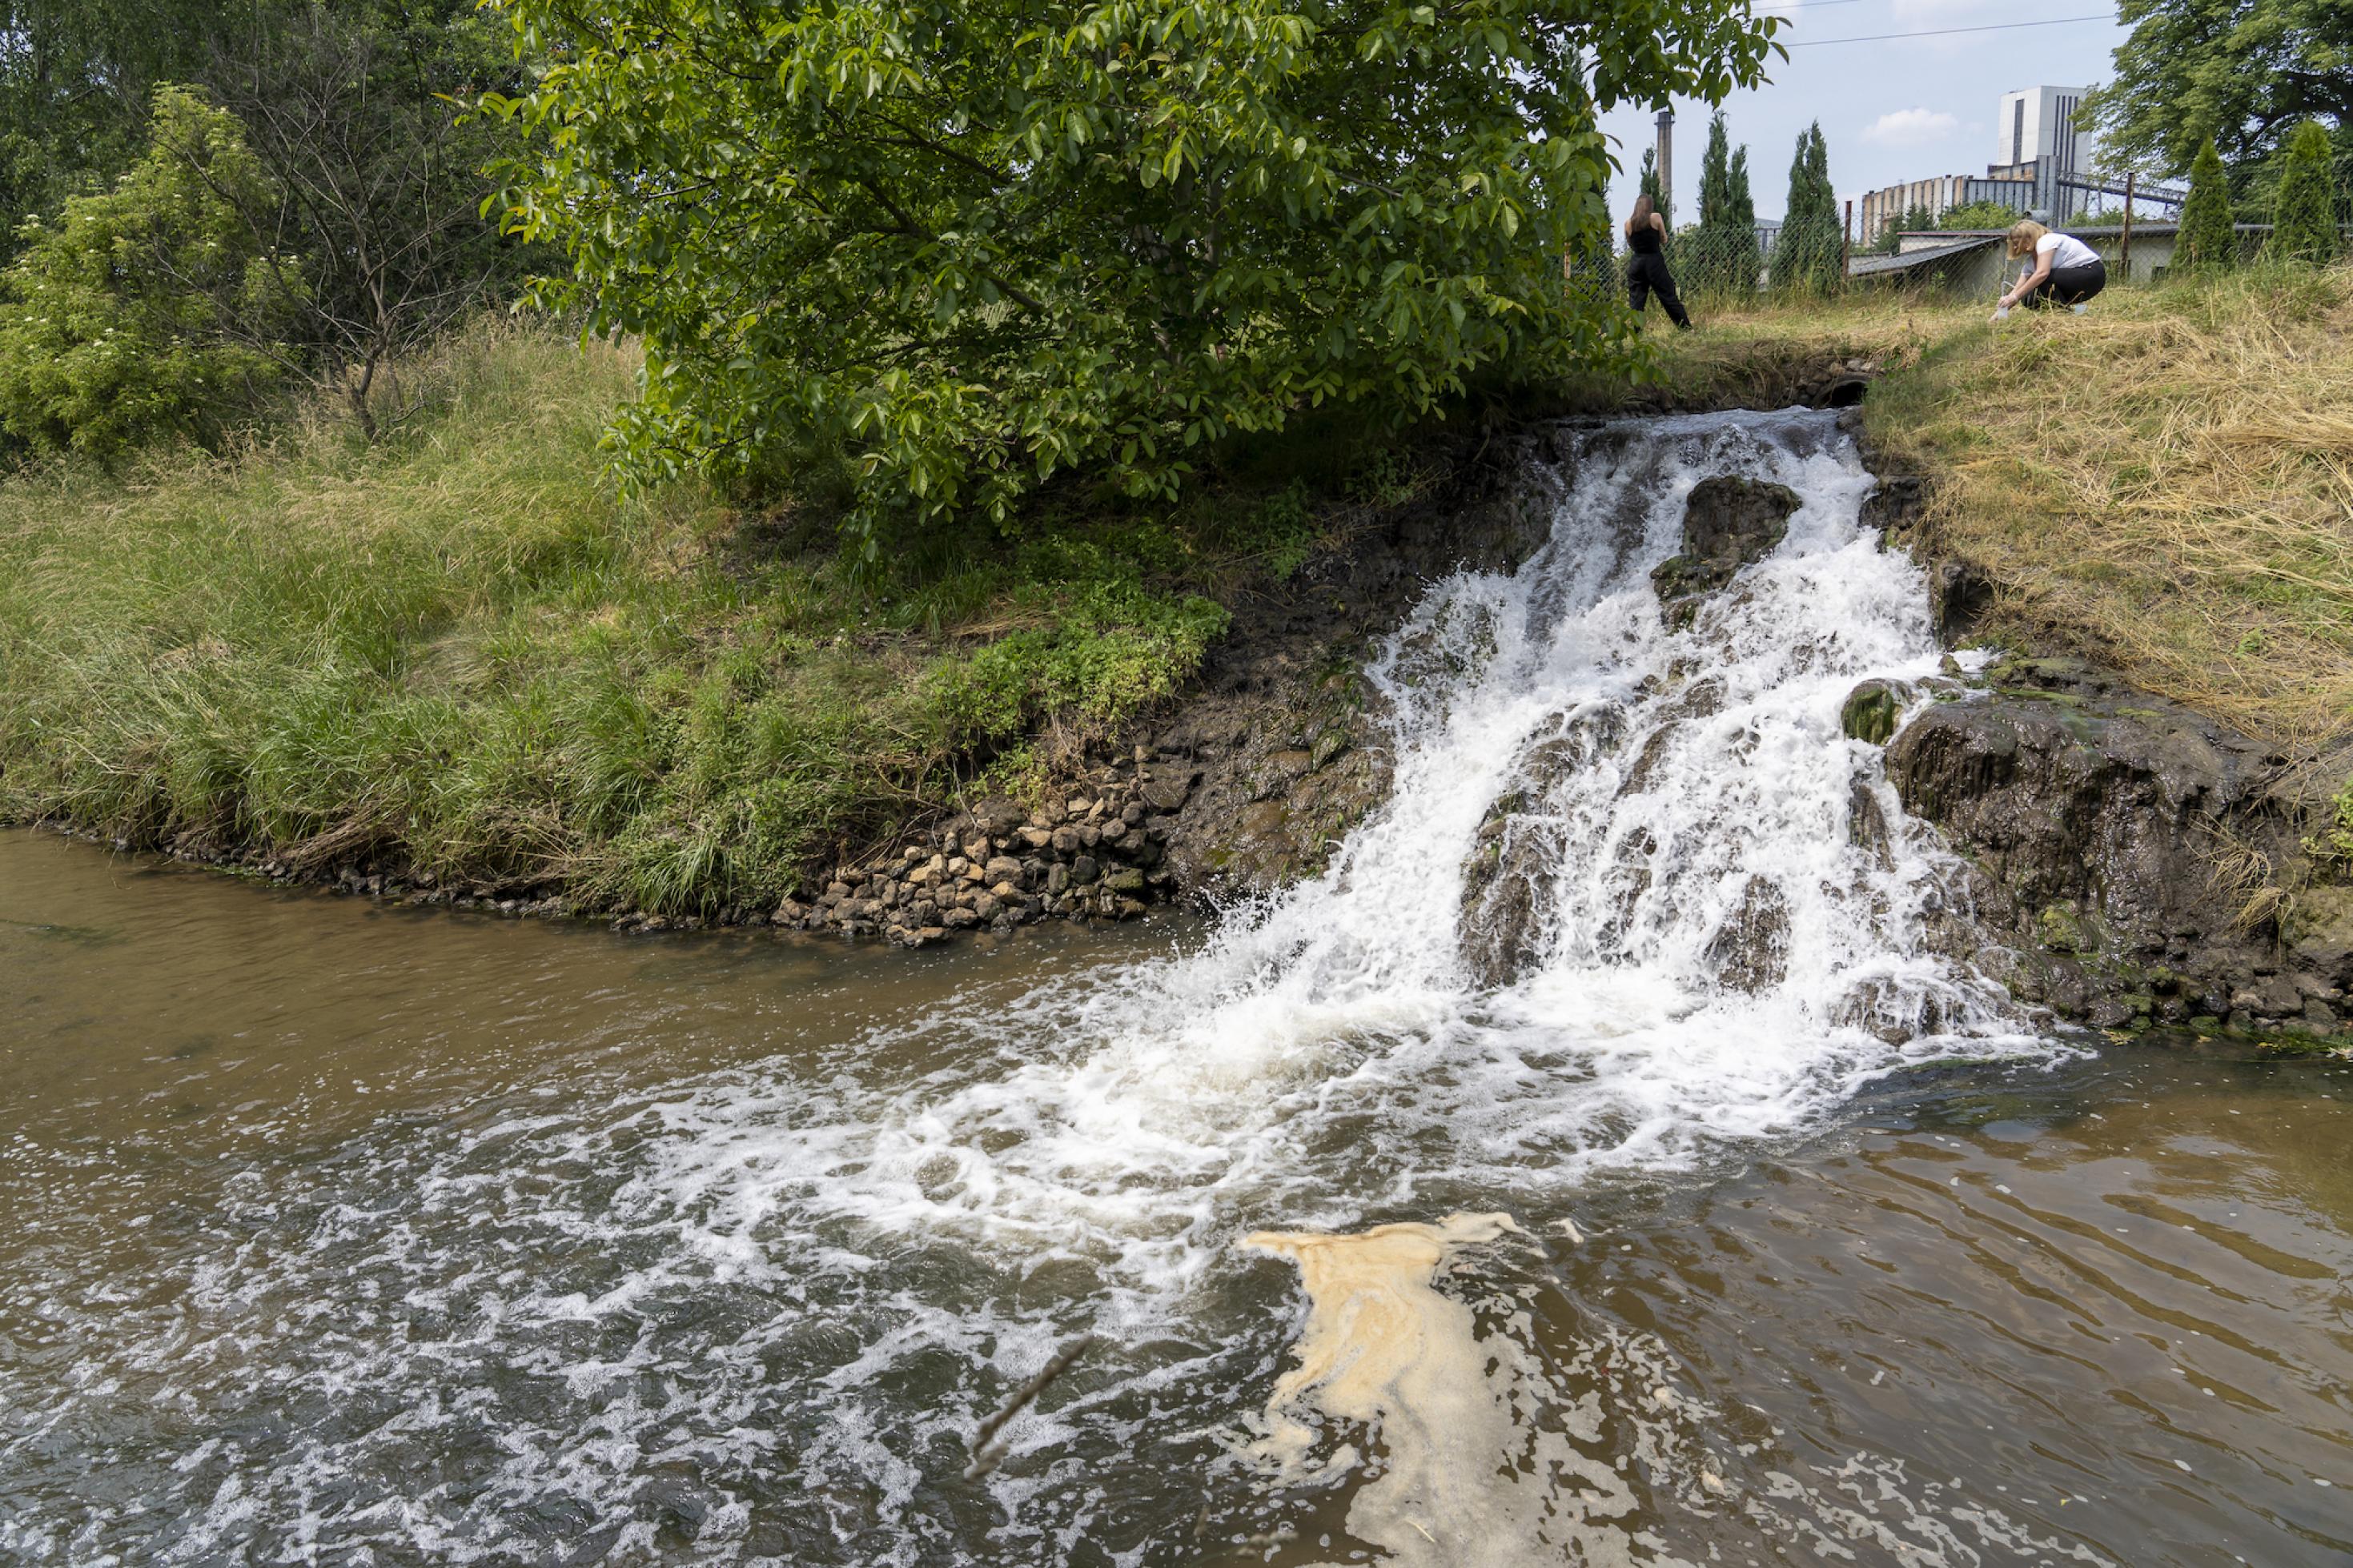 Foto von Wasser, das Wasserfallähnlich in einen Fluss läuft.